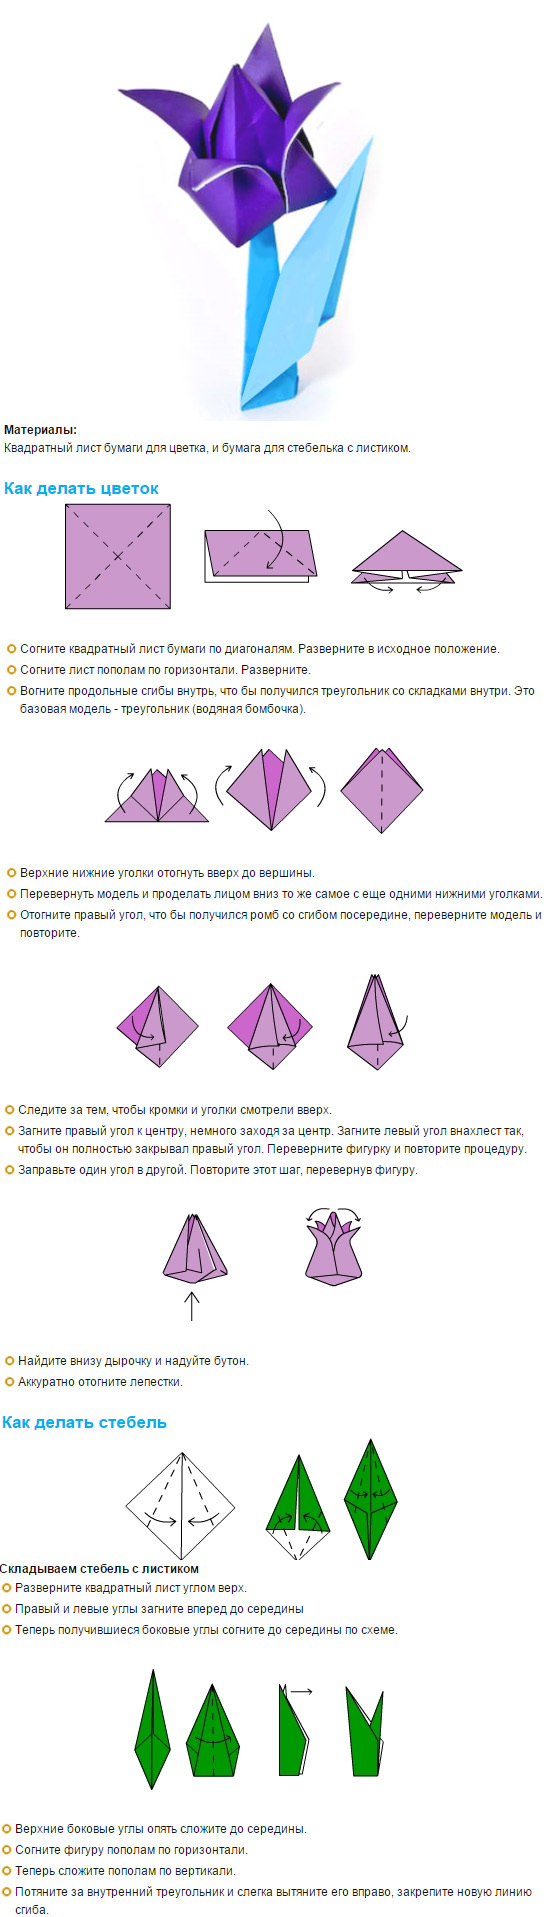 Изображения по запросу Цветок оригами